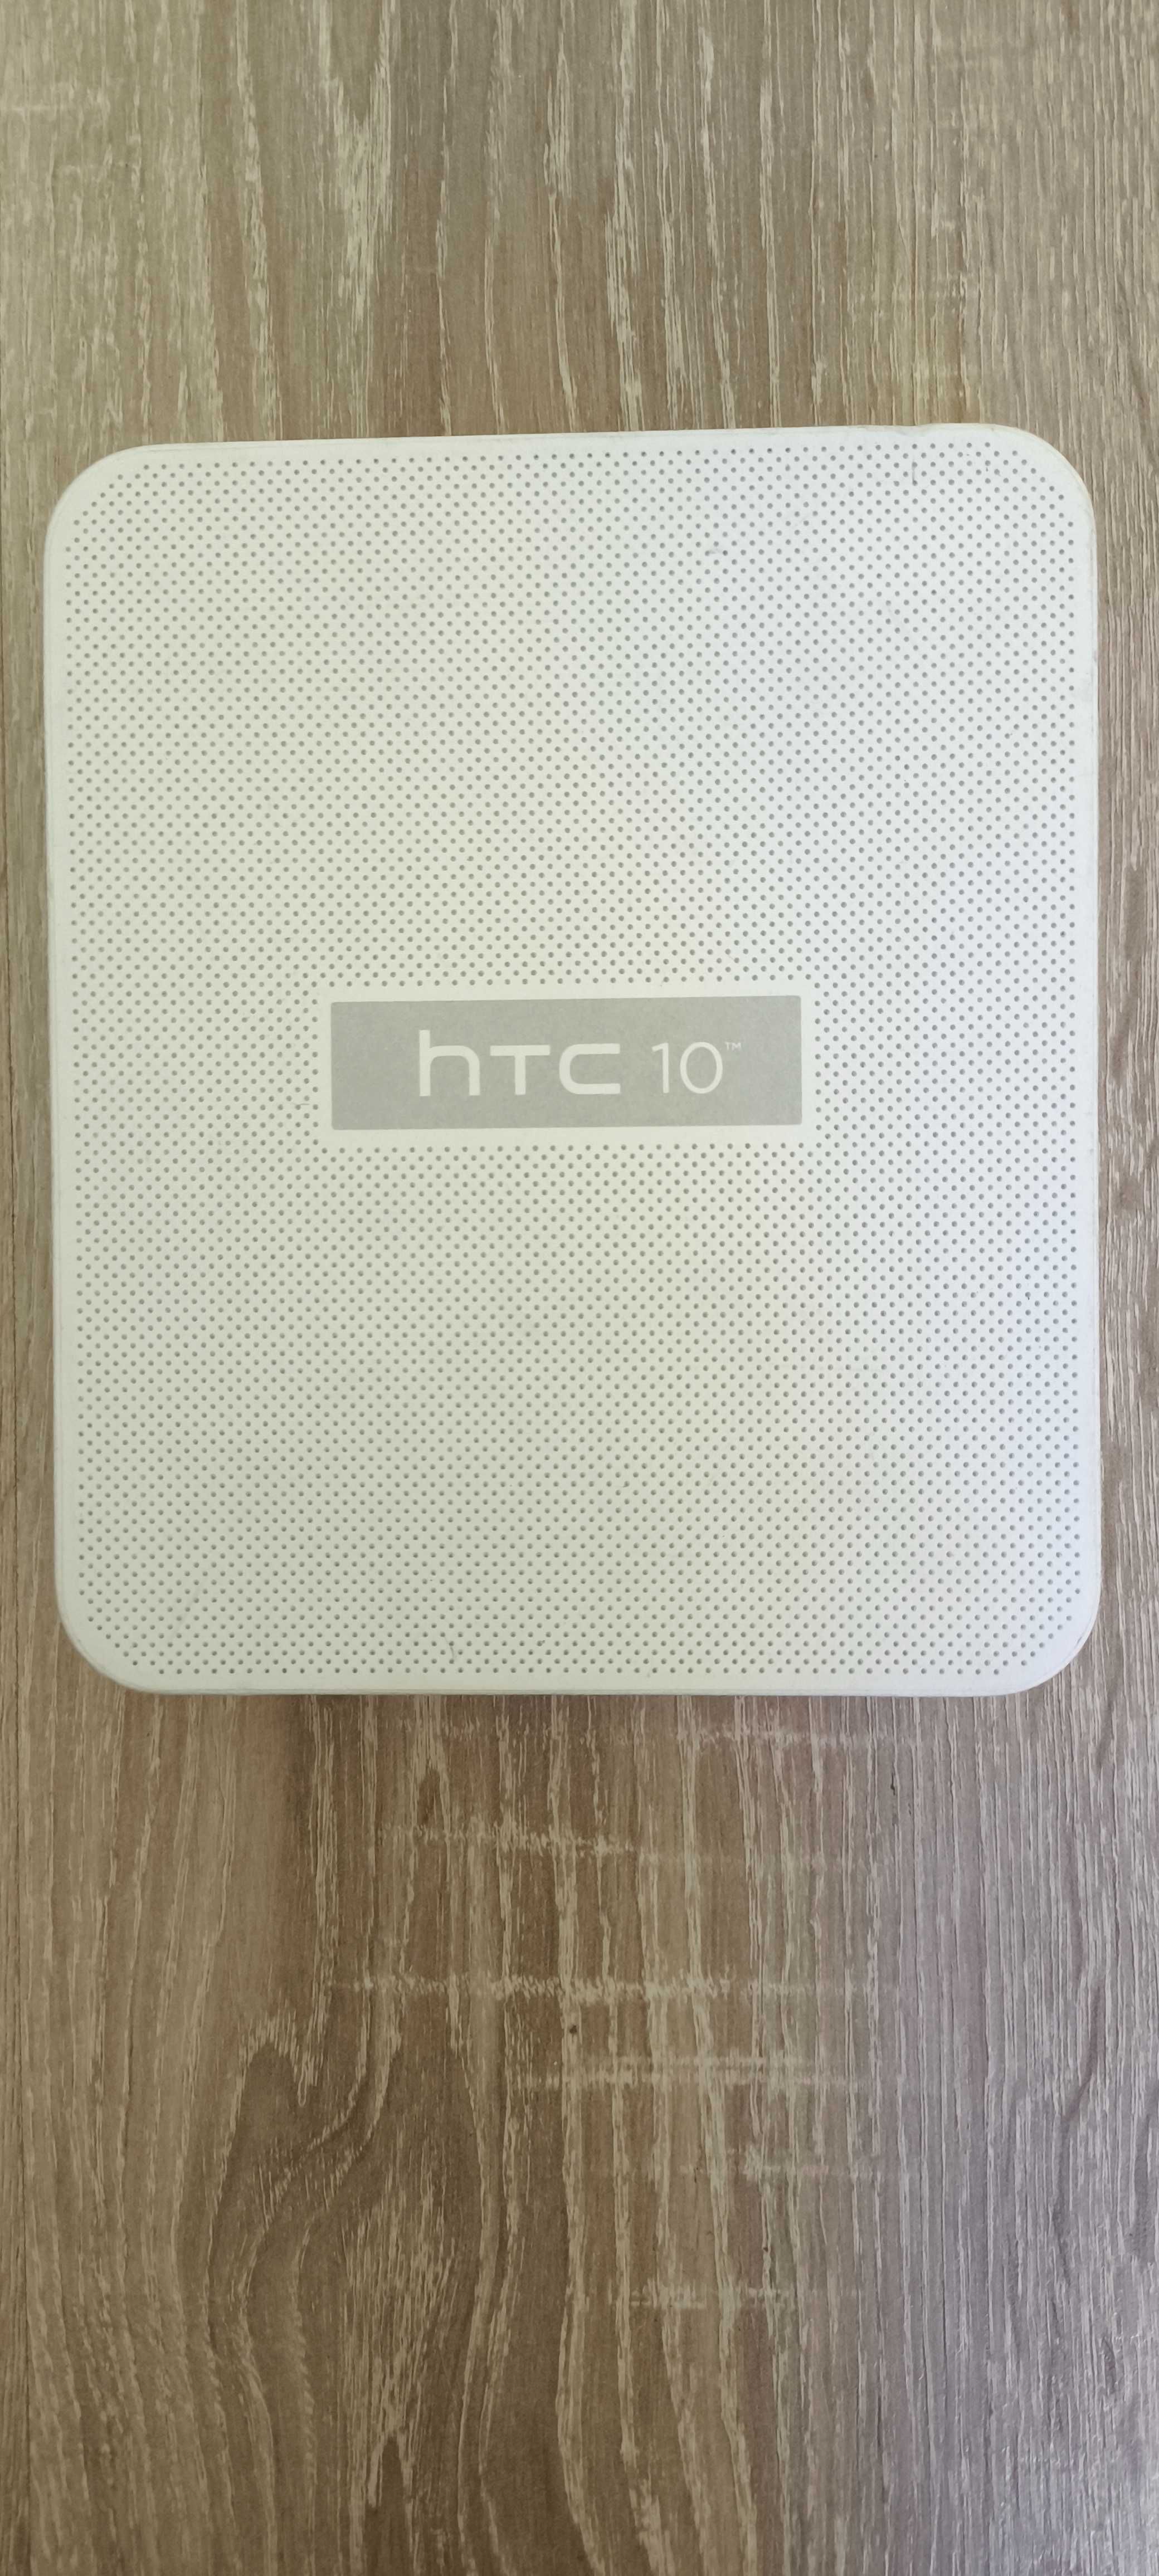 Smartfon HTC 10 w zestawie z ładowarką i słuchawkami